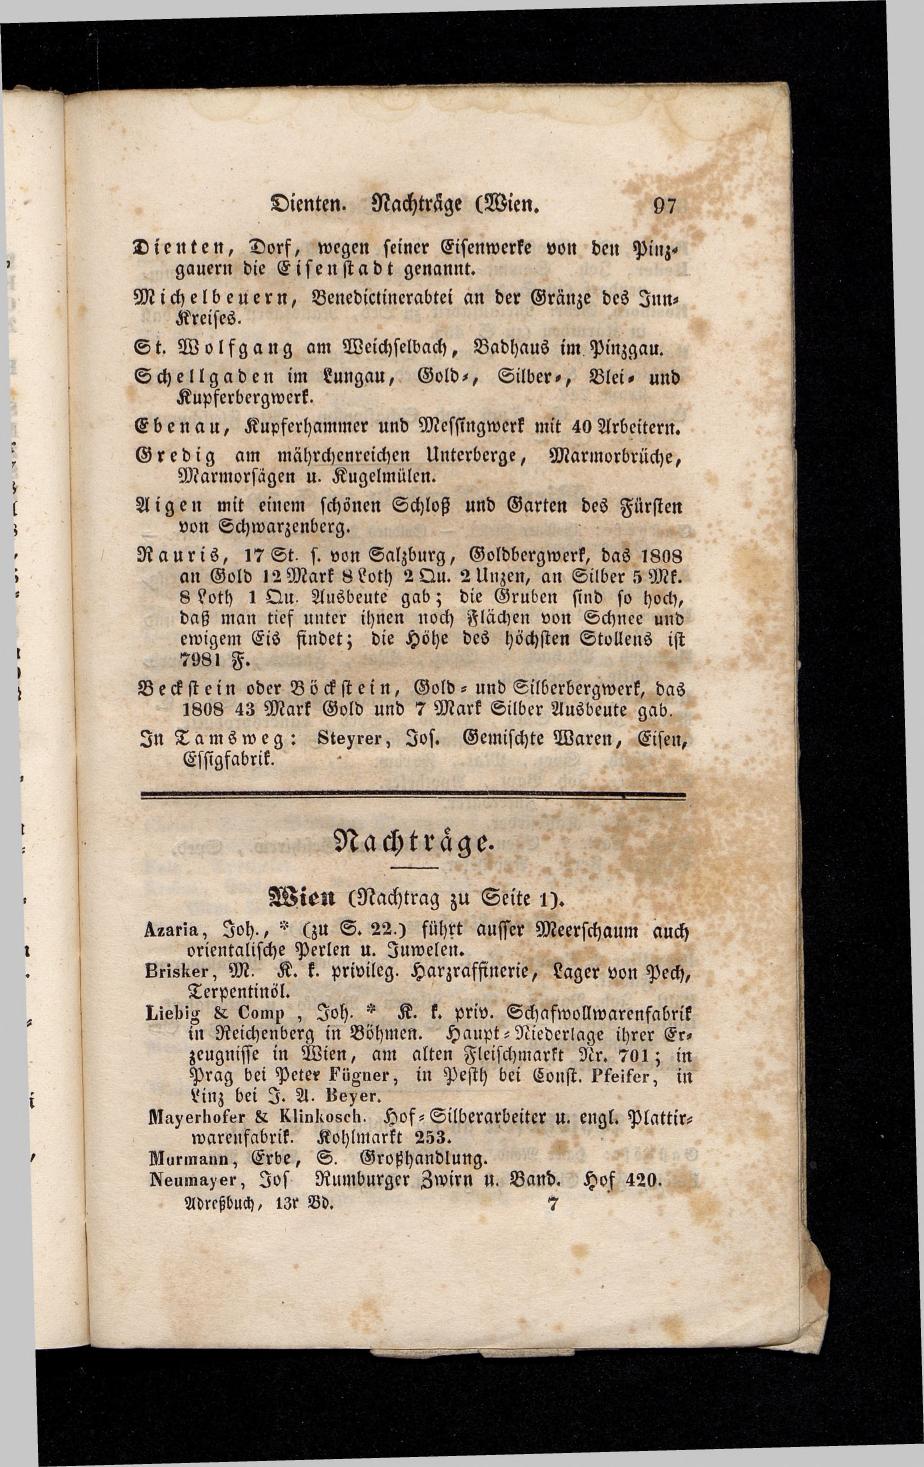 Grosses Adressbuch der Kaufleute. No. 13. Oesterreich ober u. unter der Enns 1844 - Seite 101